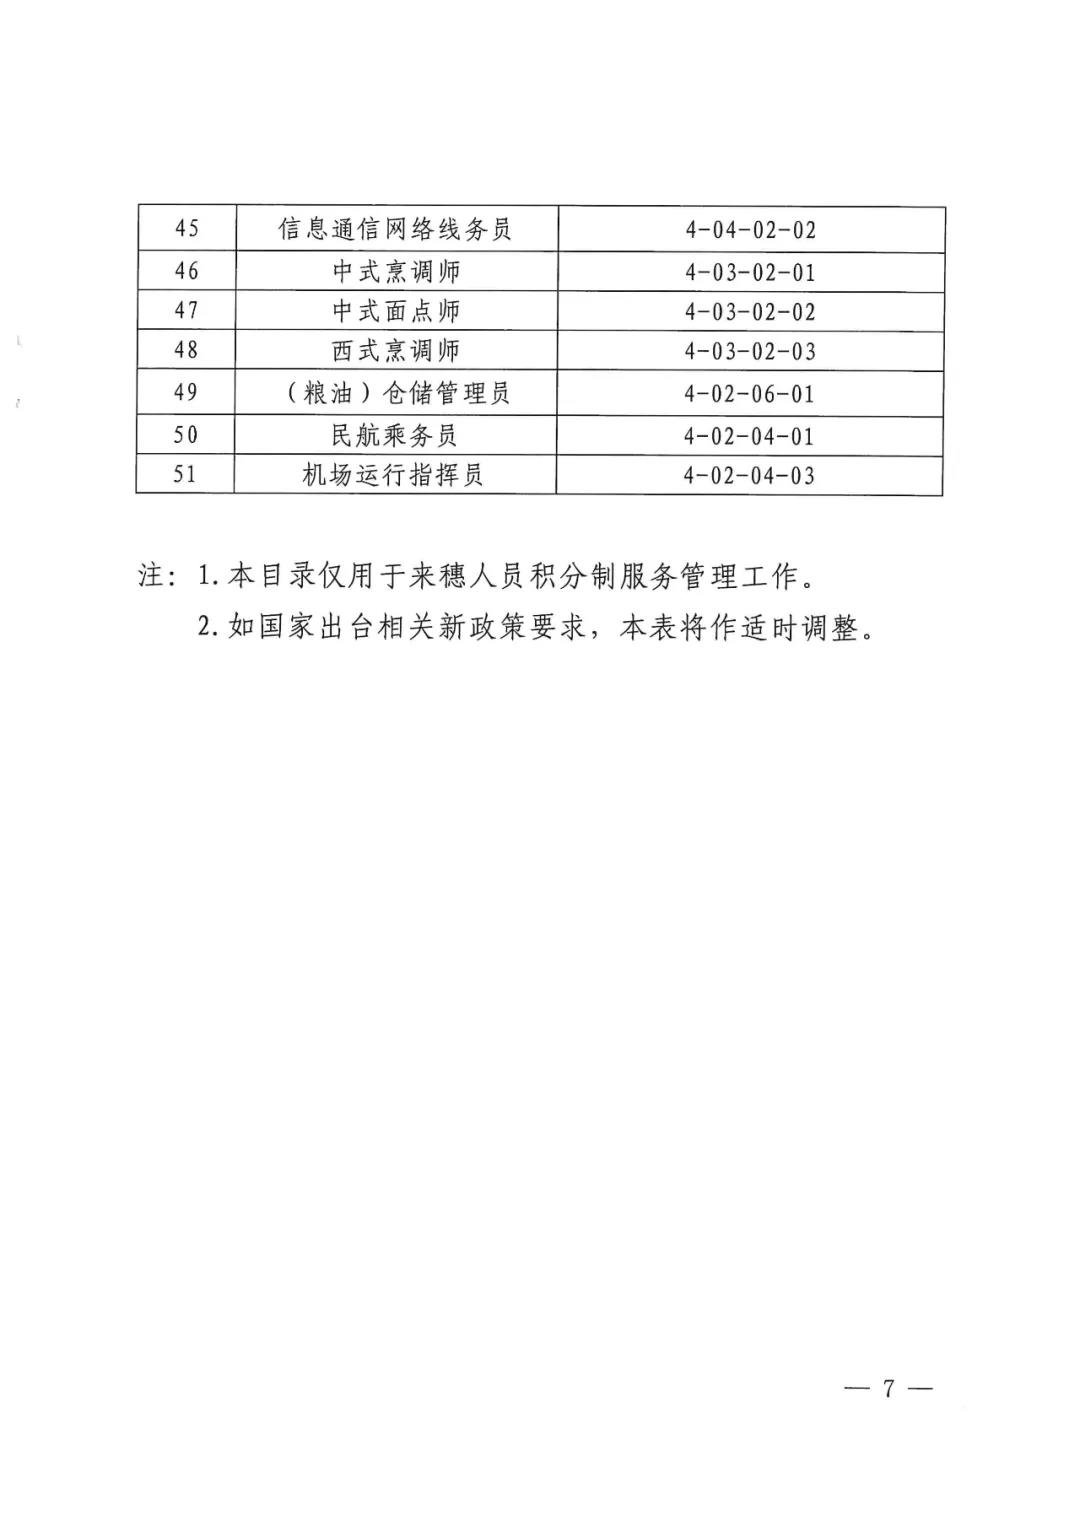 2020年广州市积分急需工种，职业资格目录